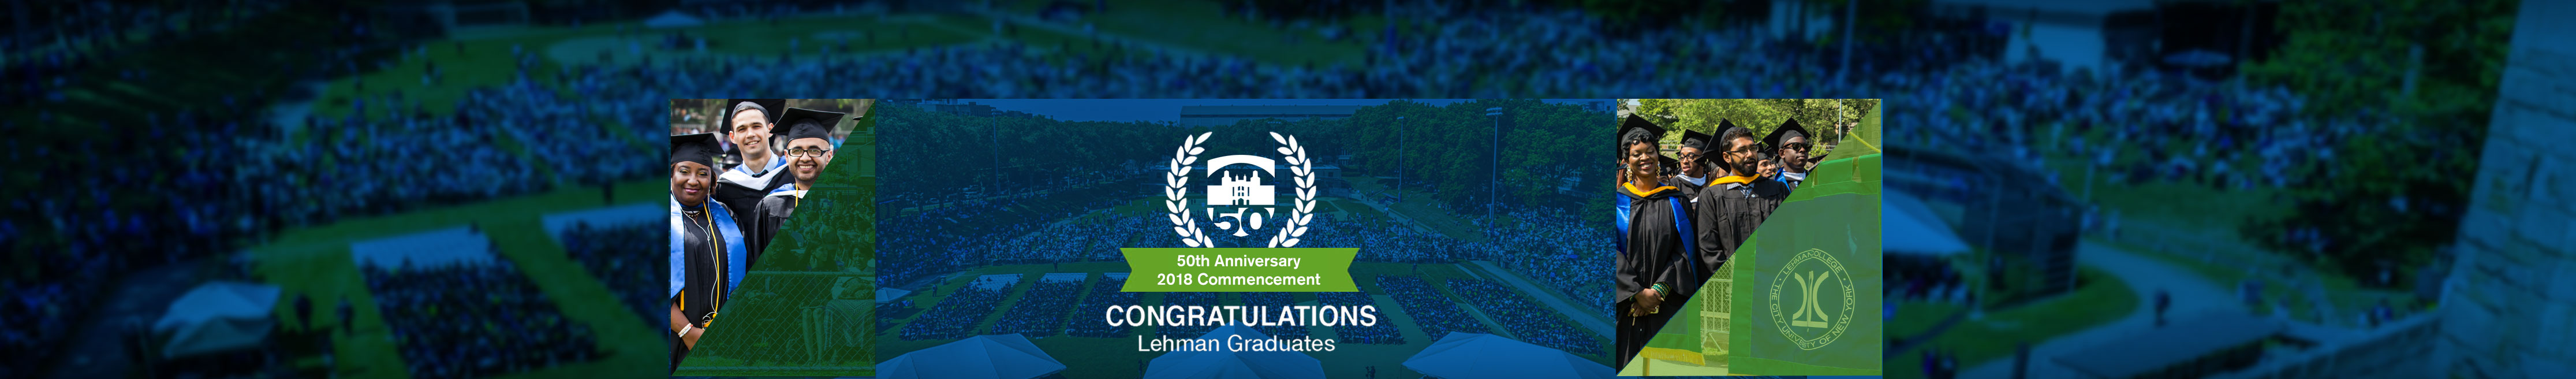 Lehman College Commencement 2018